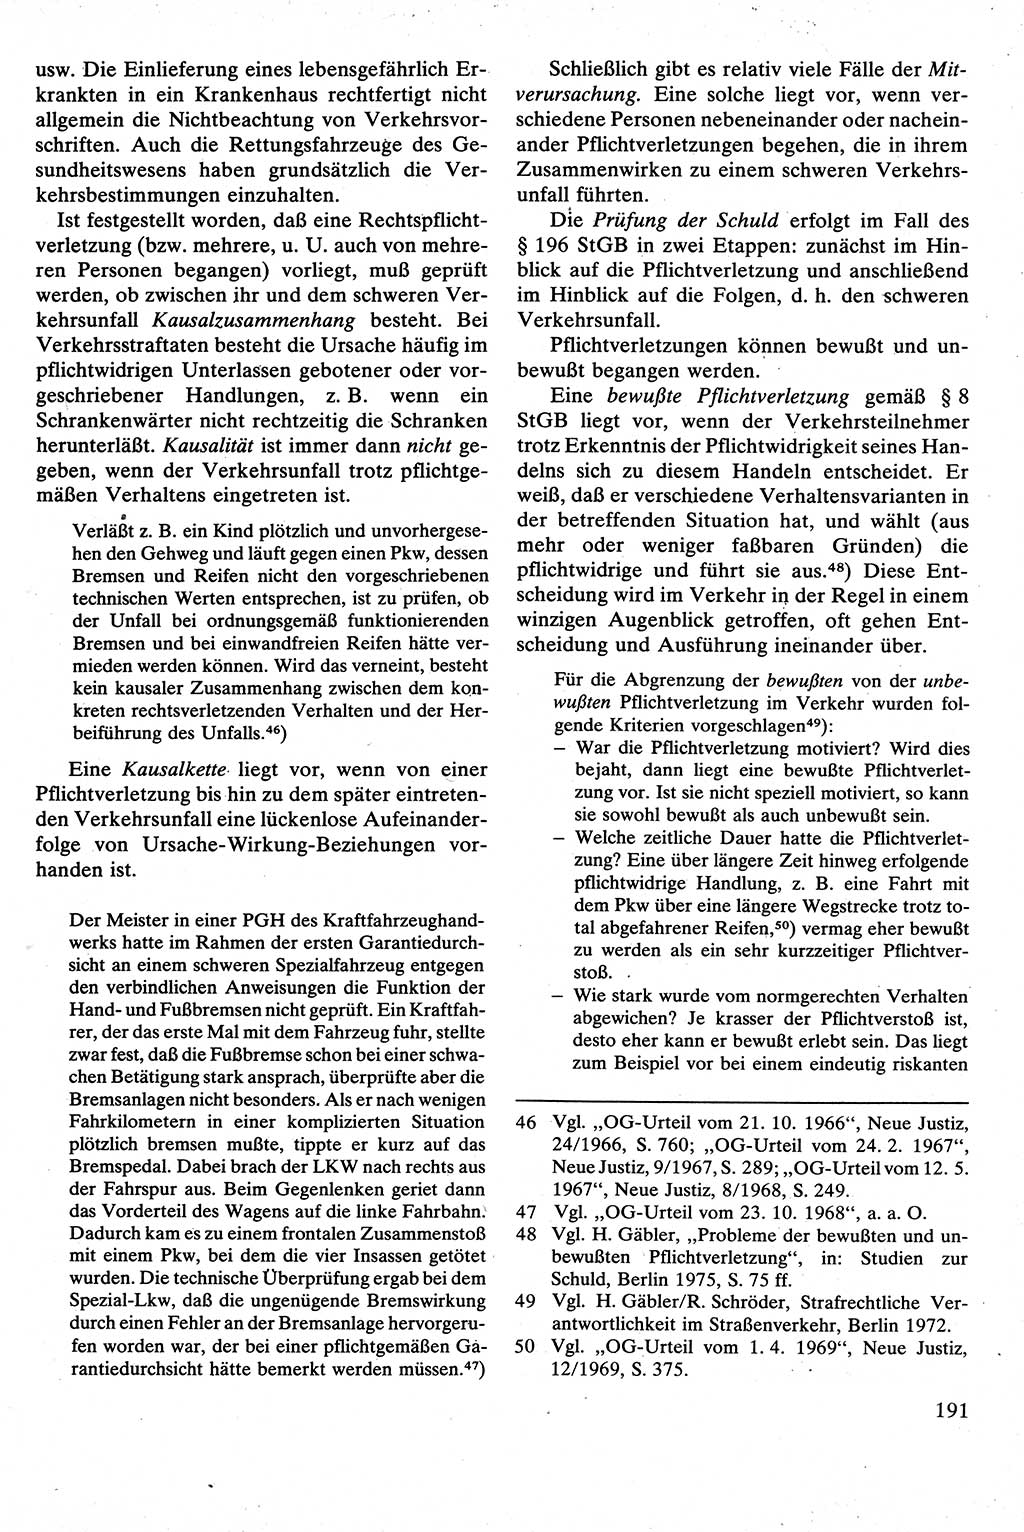 Strafrecht [Deutsche Demokratische Republik (DDR)], Besonderer Teil, Lehrbuch 1981, Seite 191 (Strafr. DDR BT Lb. 1981, S. 191)